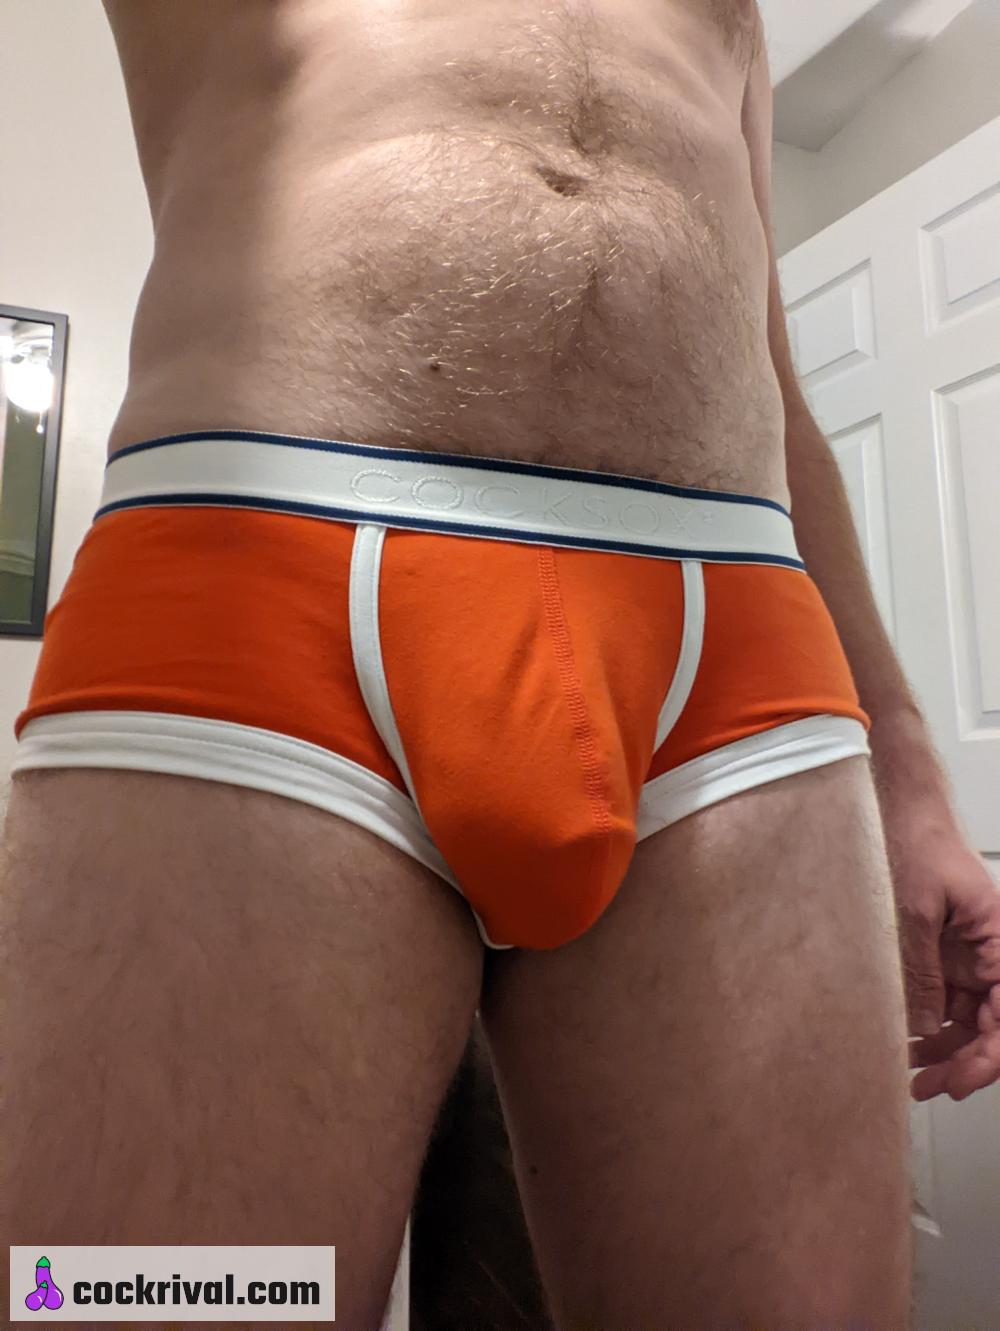 Finally got some underwear I like :-)